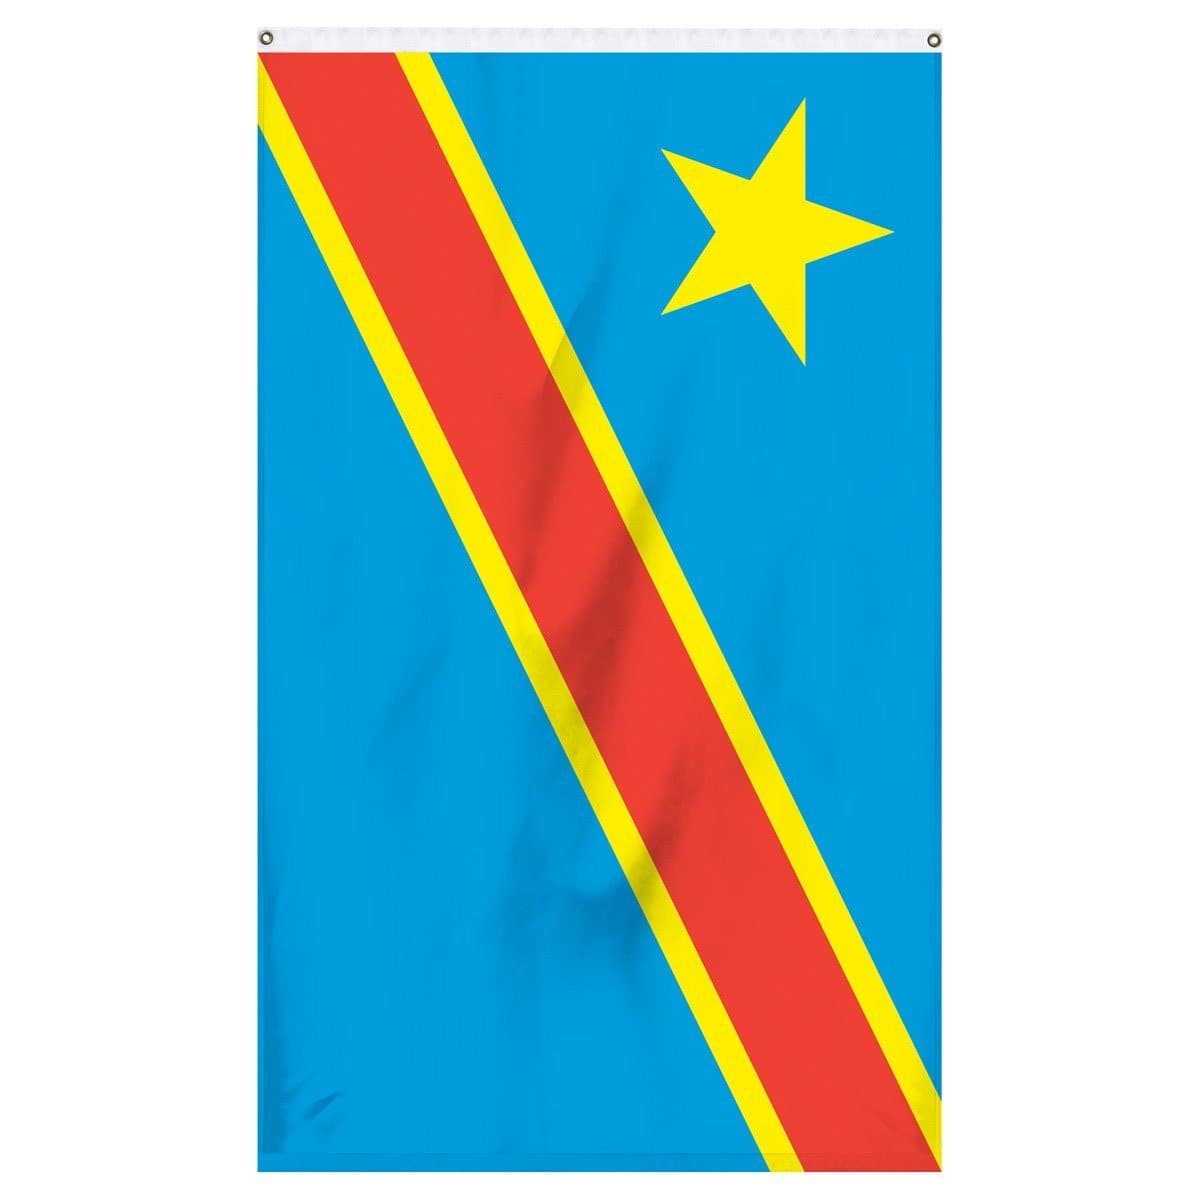 CONGO KINSHASA  Congo flag, Congo, Dr congo